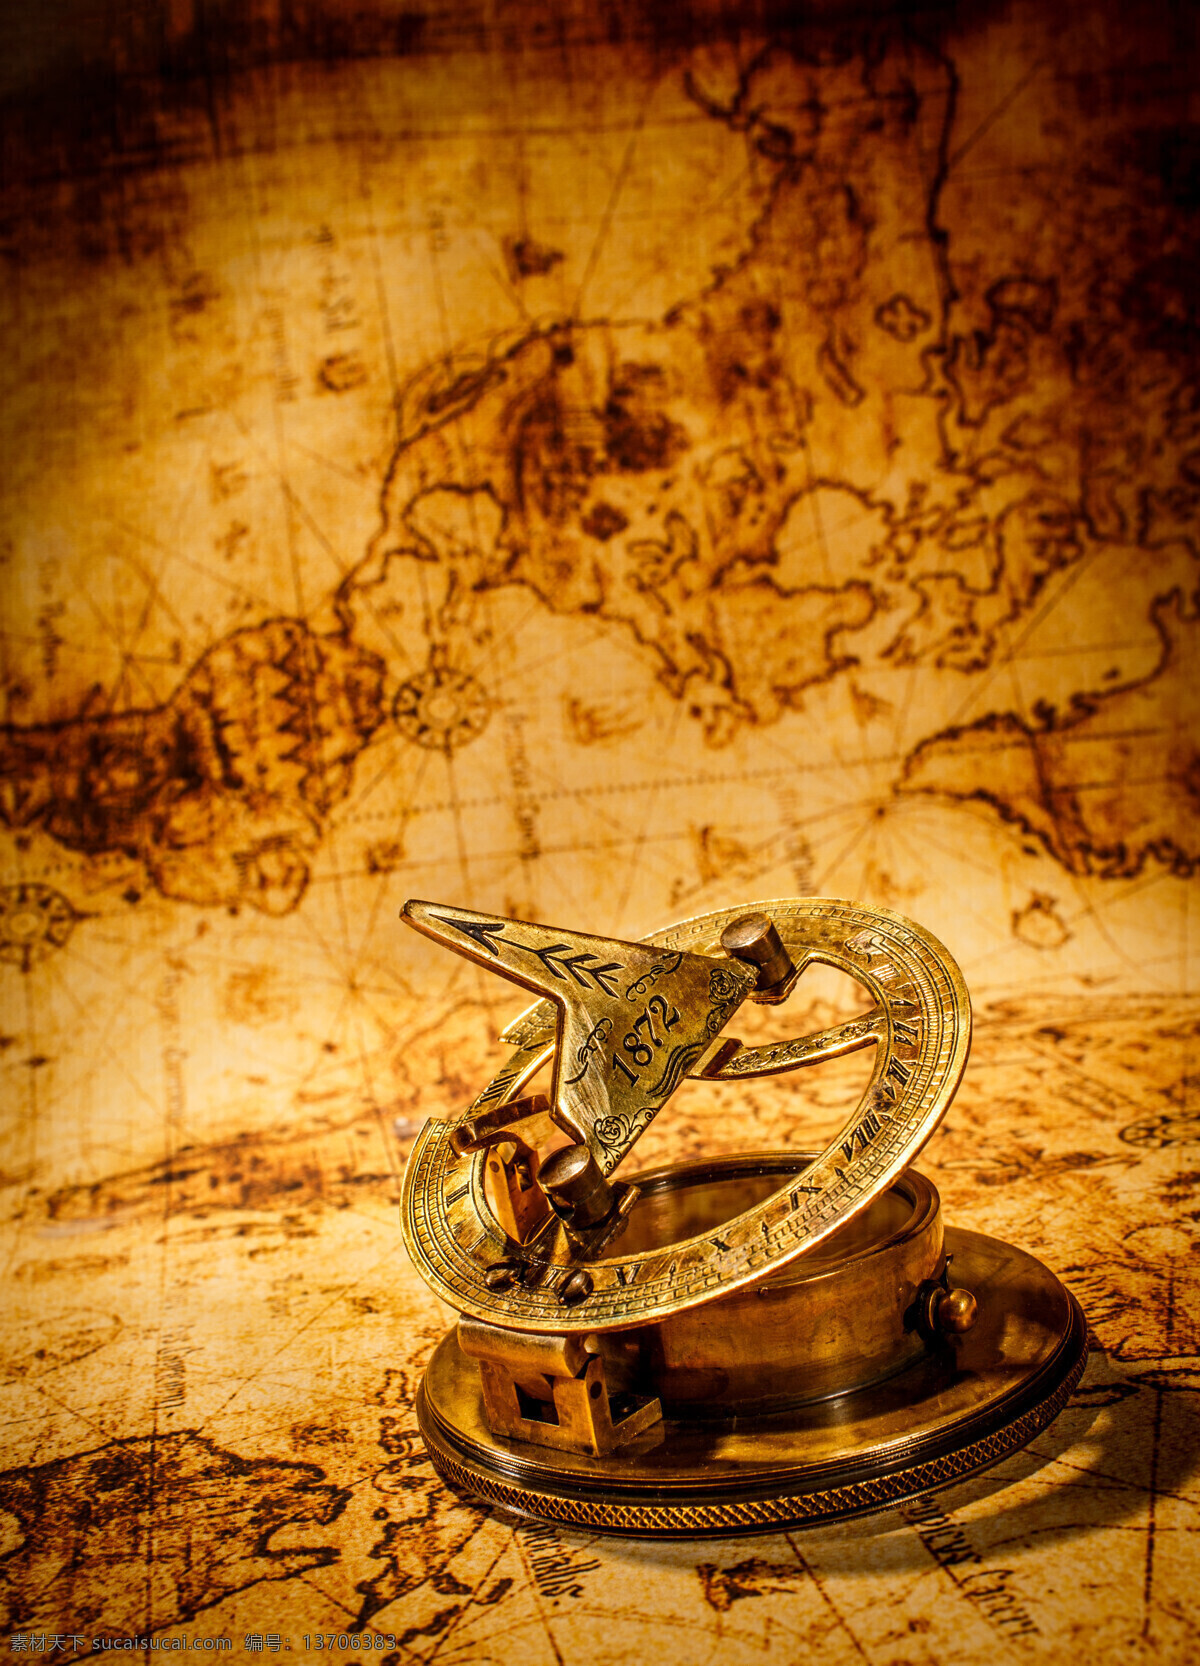 地图 上 航海 工具 航海工具 怀旧地图 环球旅行 导航 地图图片 生活百科